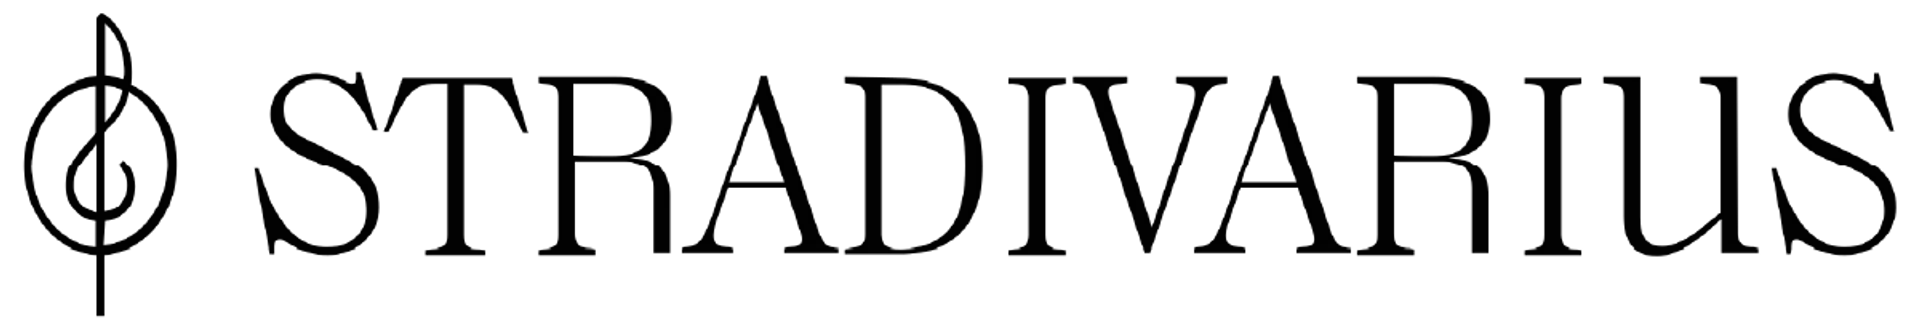 STRADIVARIUS logo die aktuell Flugblatt